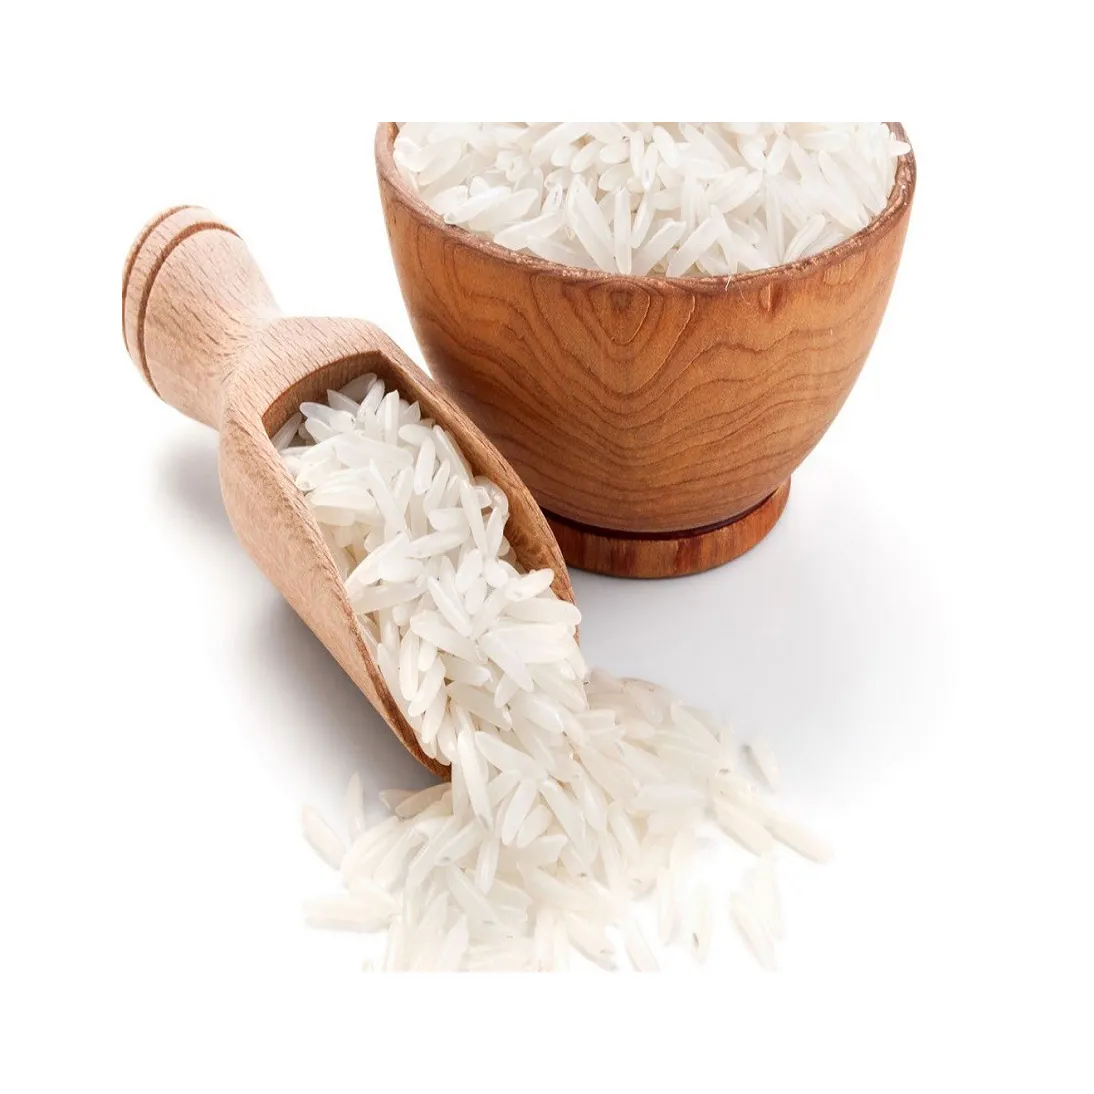 أرز بني طويل الحبوب 5% أرز أبيض مكسور، أرز هندي طويل الحبوب بالهلام، أرز ياسمين